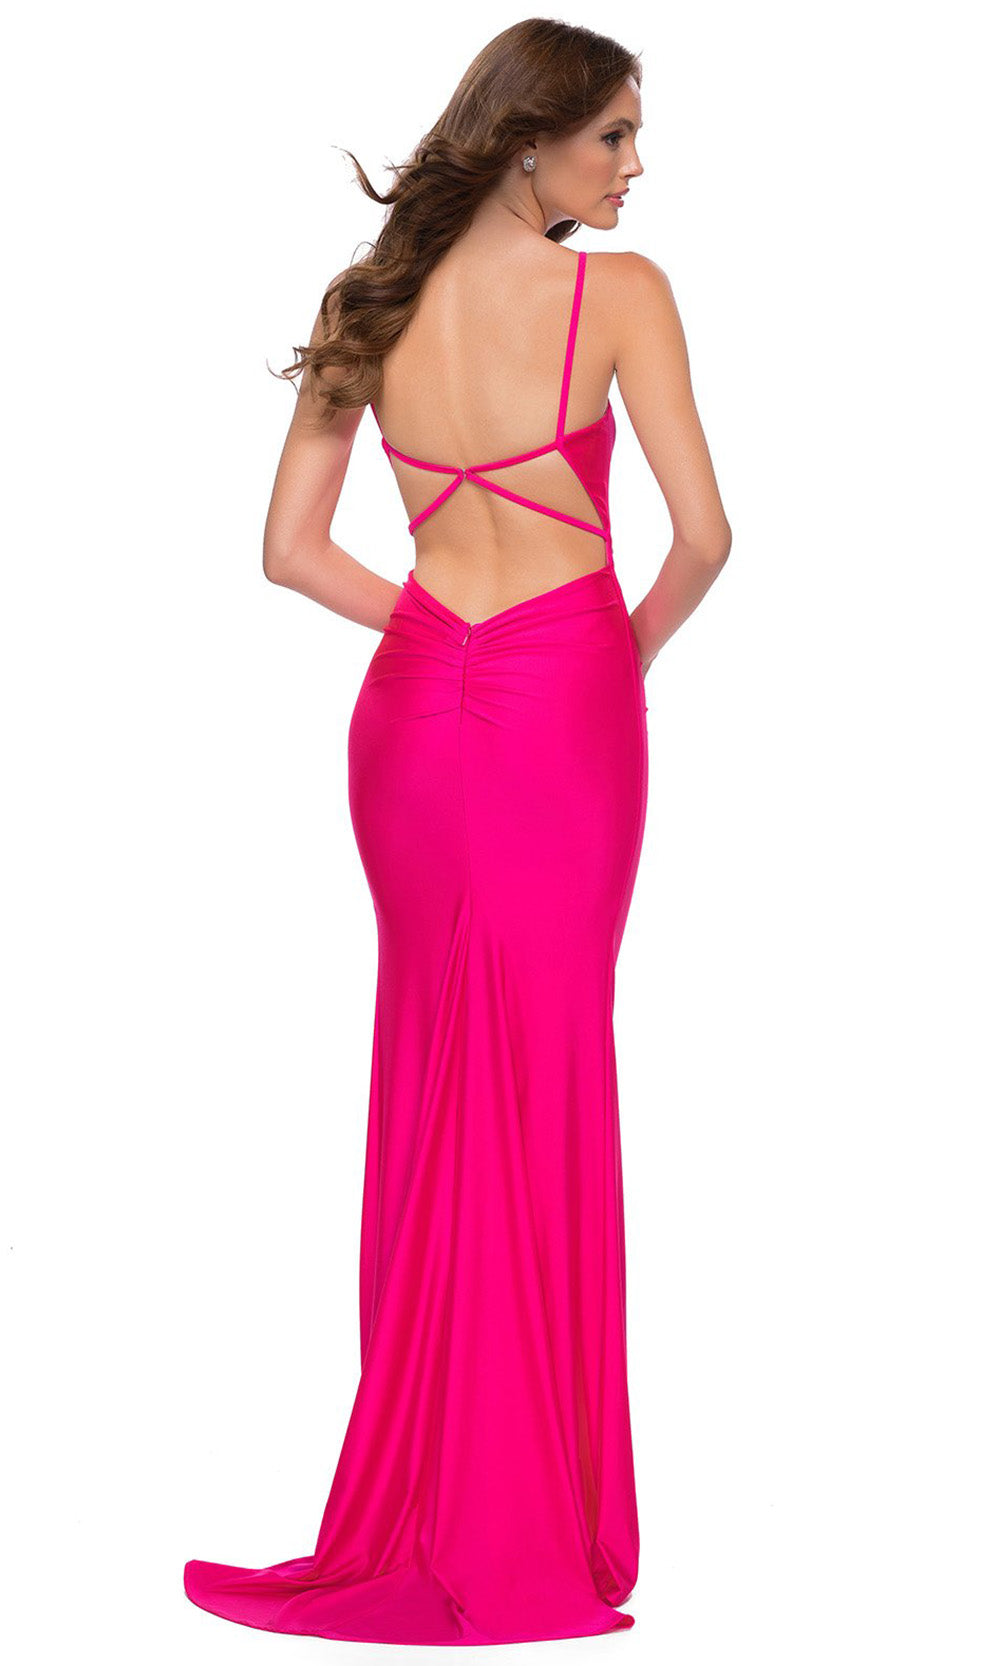 La Femme - 29966 Ruched V-Neck Sheath Dress In Pink